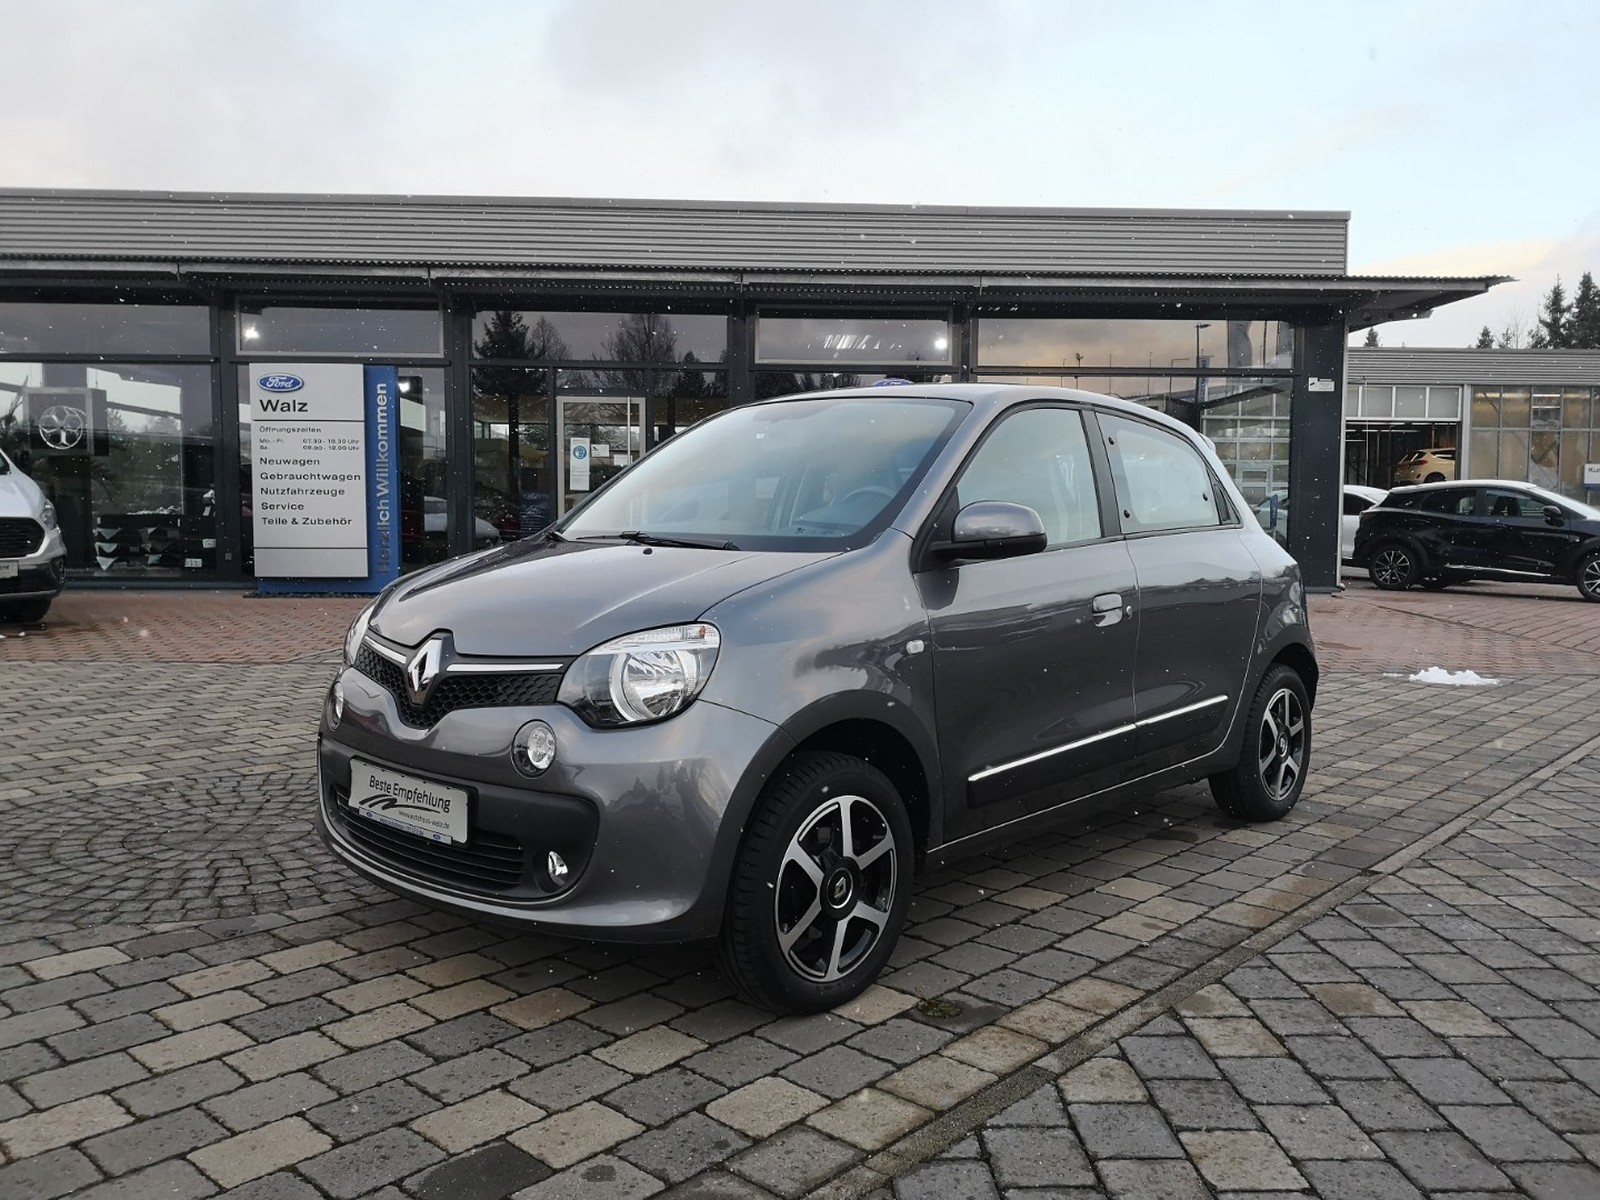 Renault Twingo Intens gebraucht kaufen in Calw Preis 9790 eur - Int.Nr.:  93021 VERKAUFT